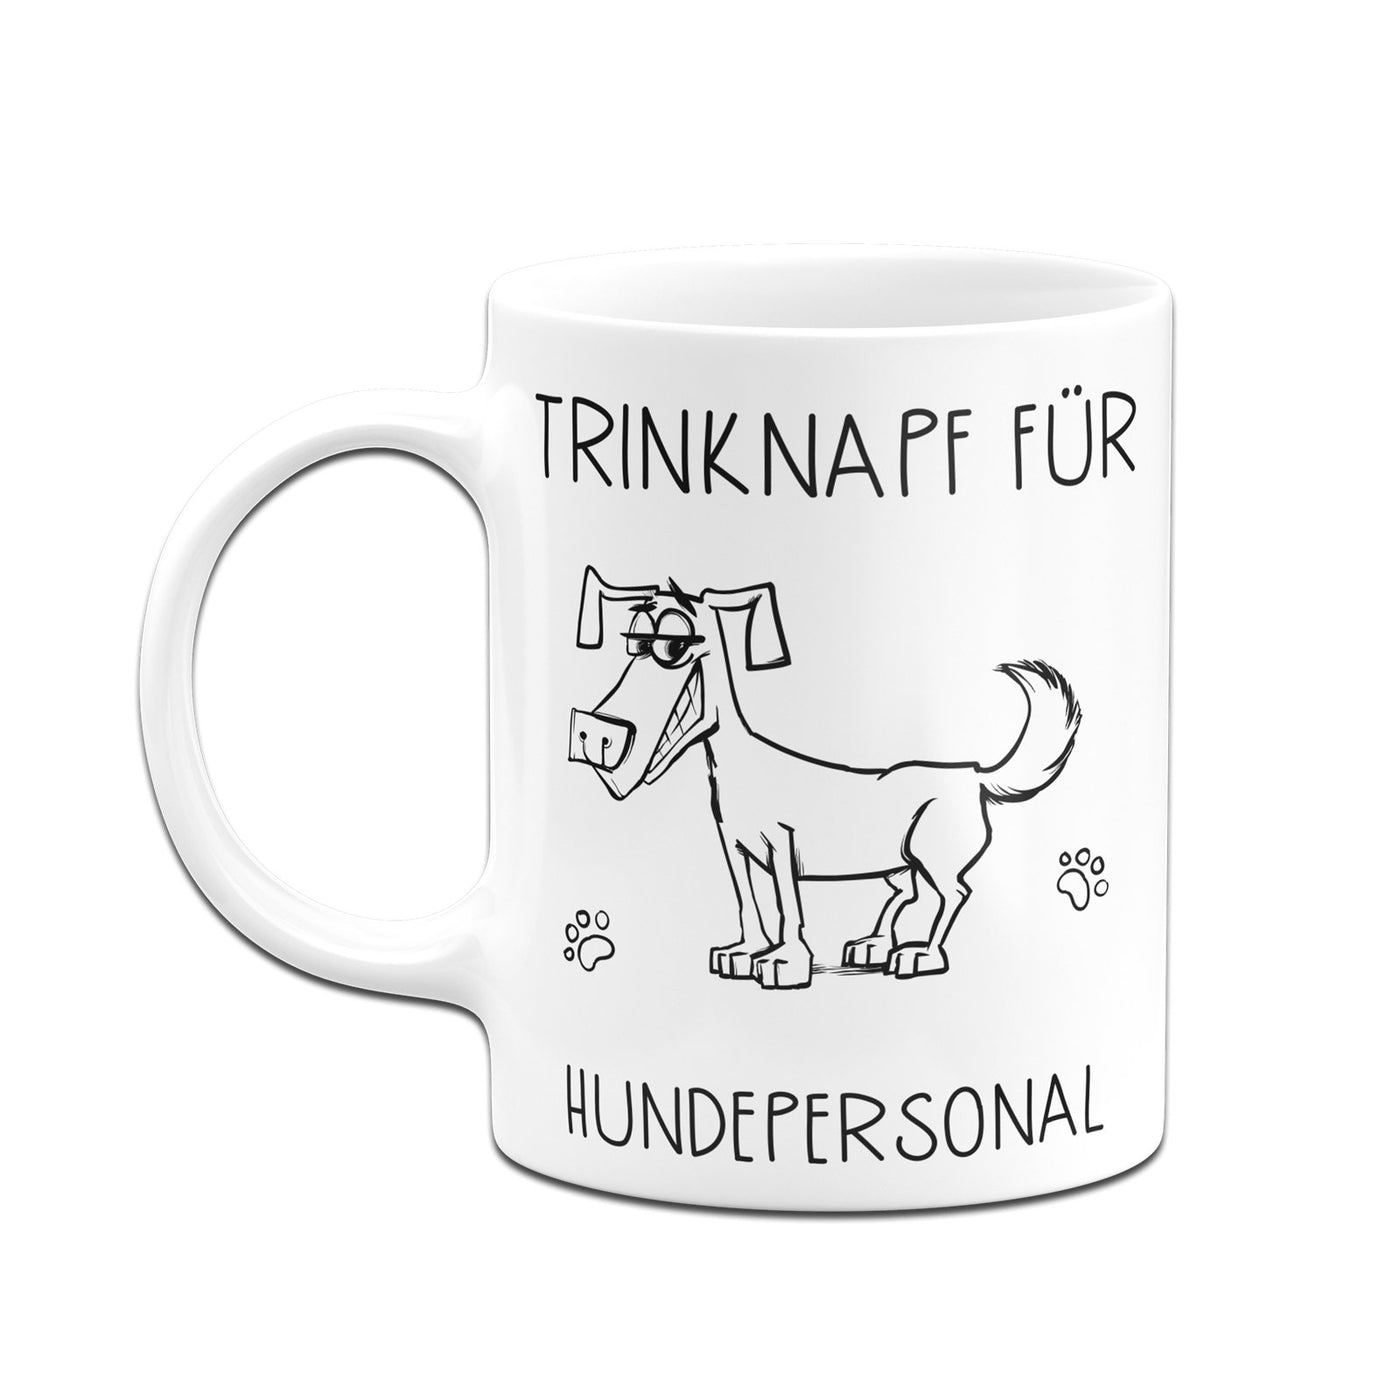 Bild: Tasse - Trinknapf für Hundepersonal V2 Geschenkidee